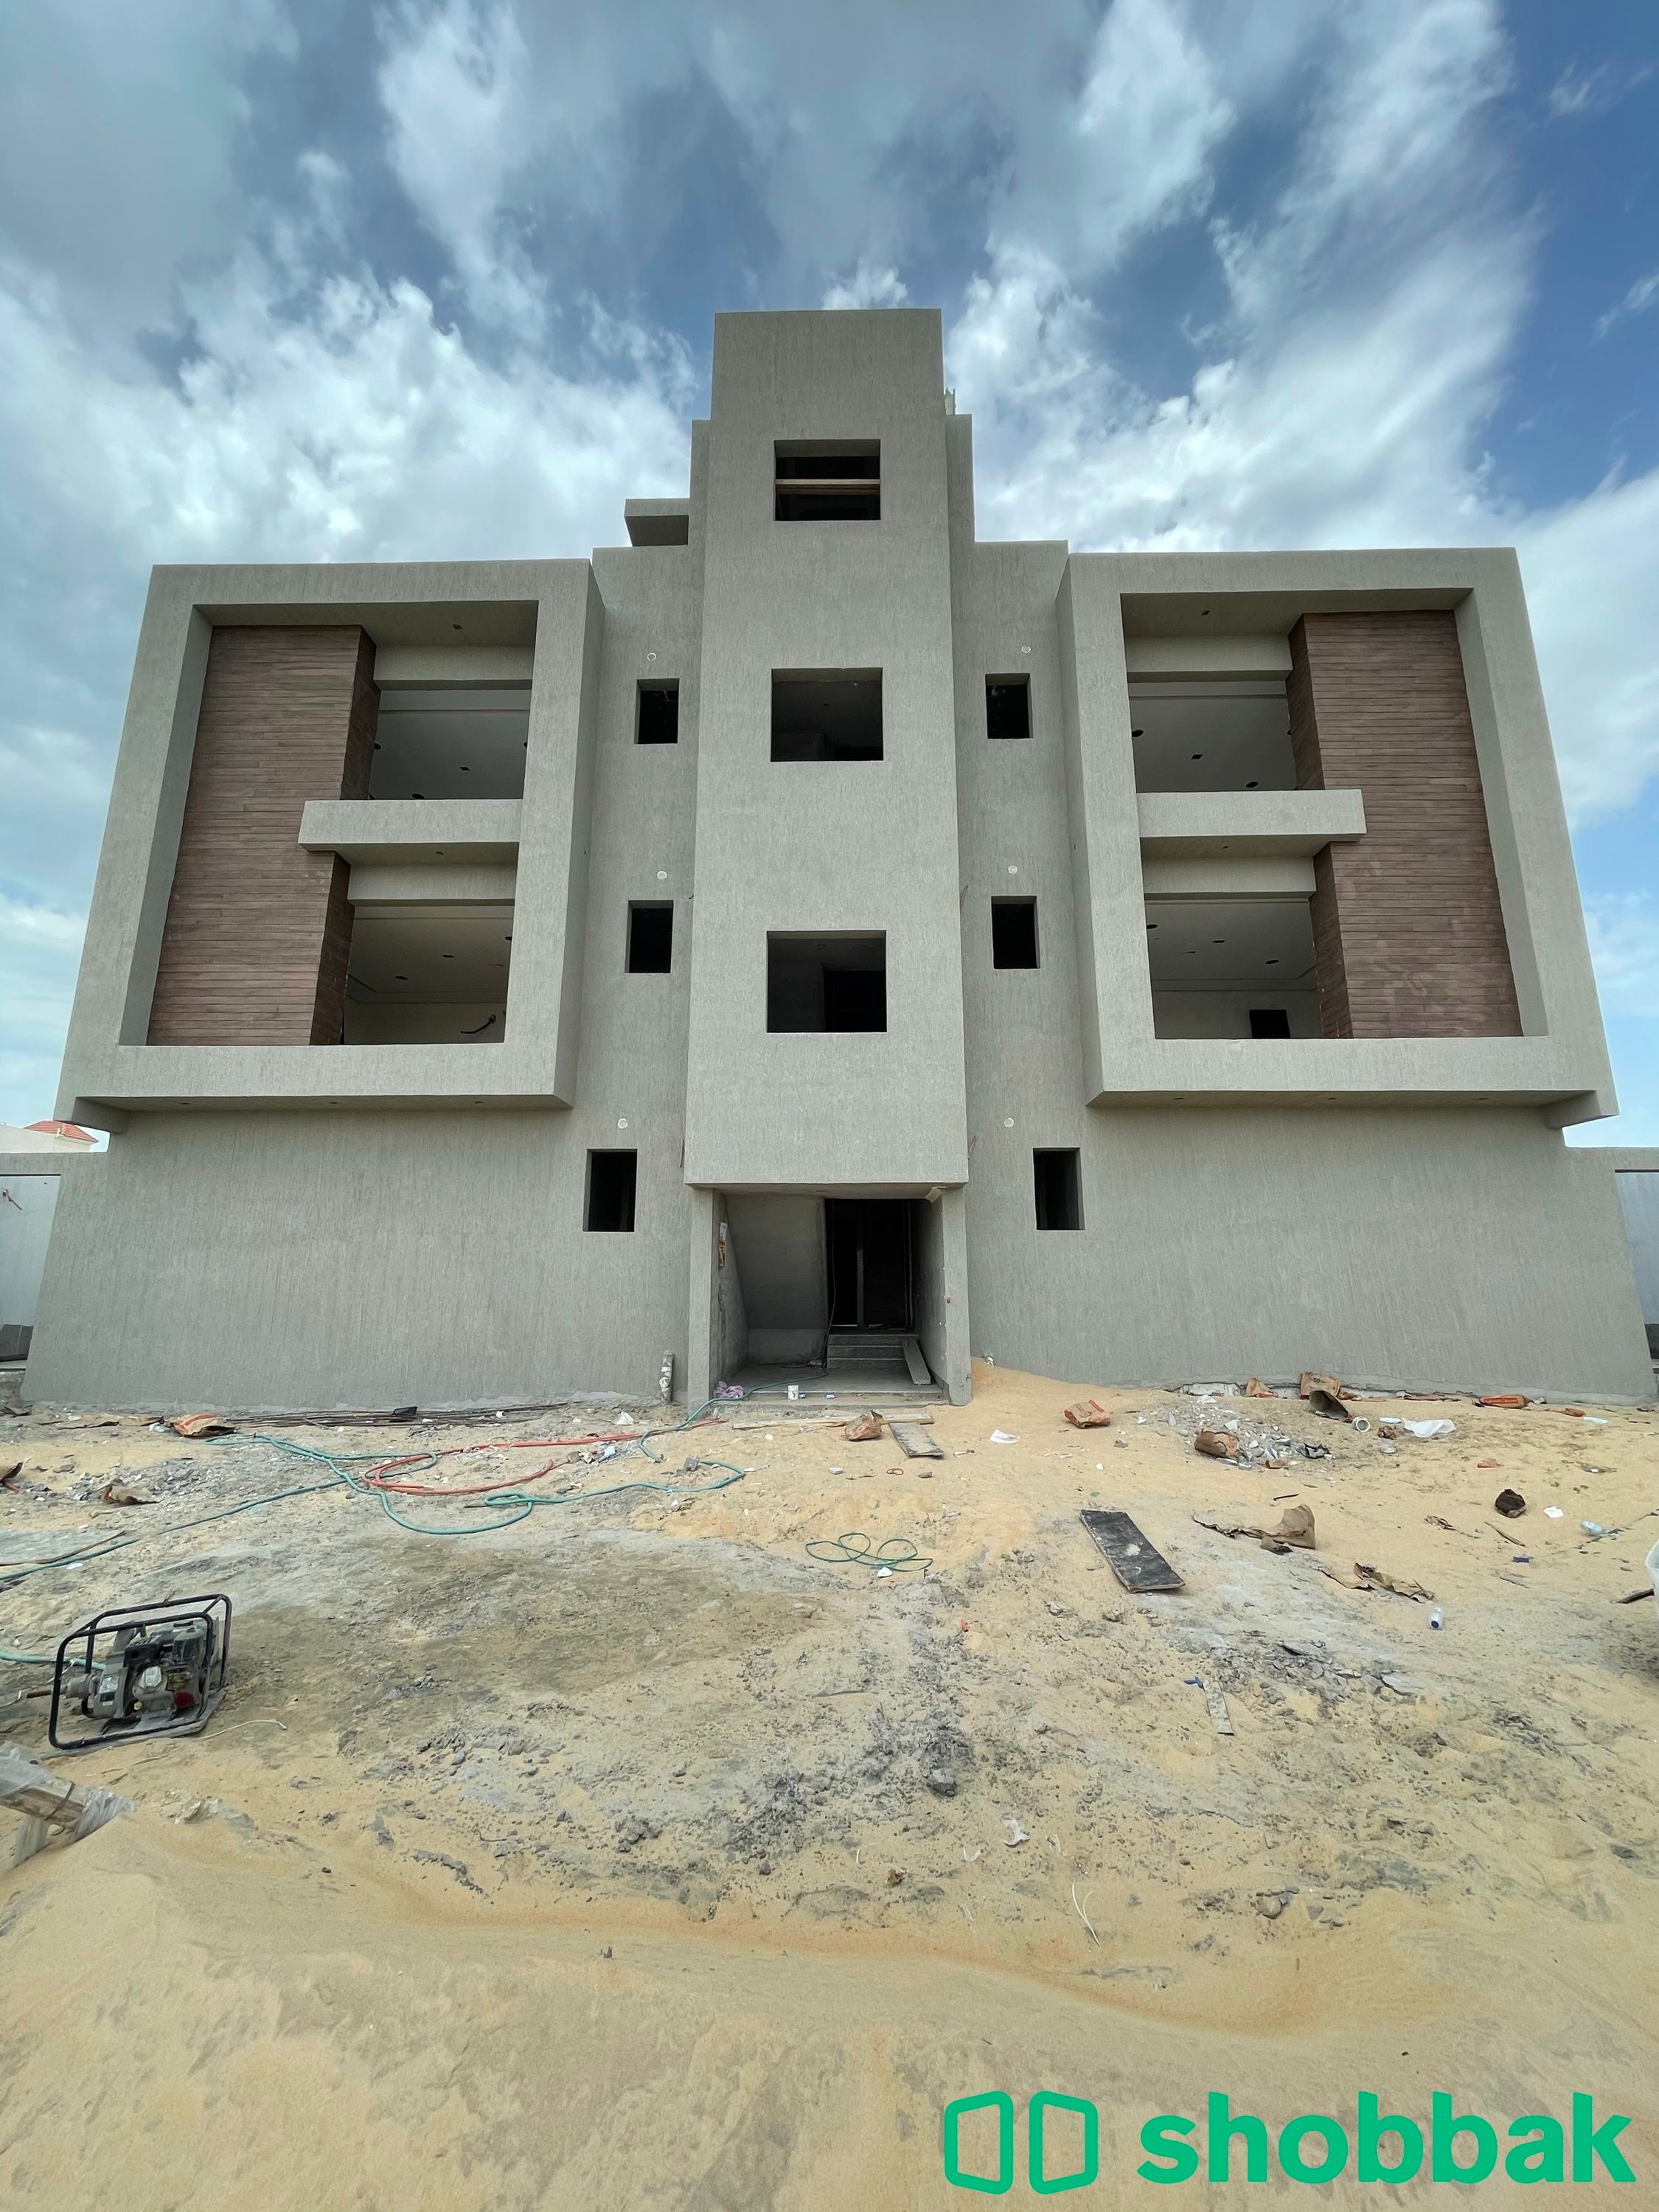 عمارة رقم (1) شقة رقم (4) للبيع بحي الجوهرة-الدمام. Shobbak Saudi Arabia